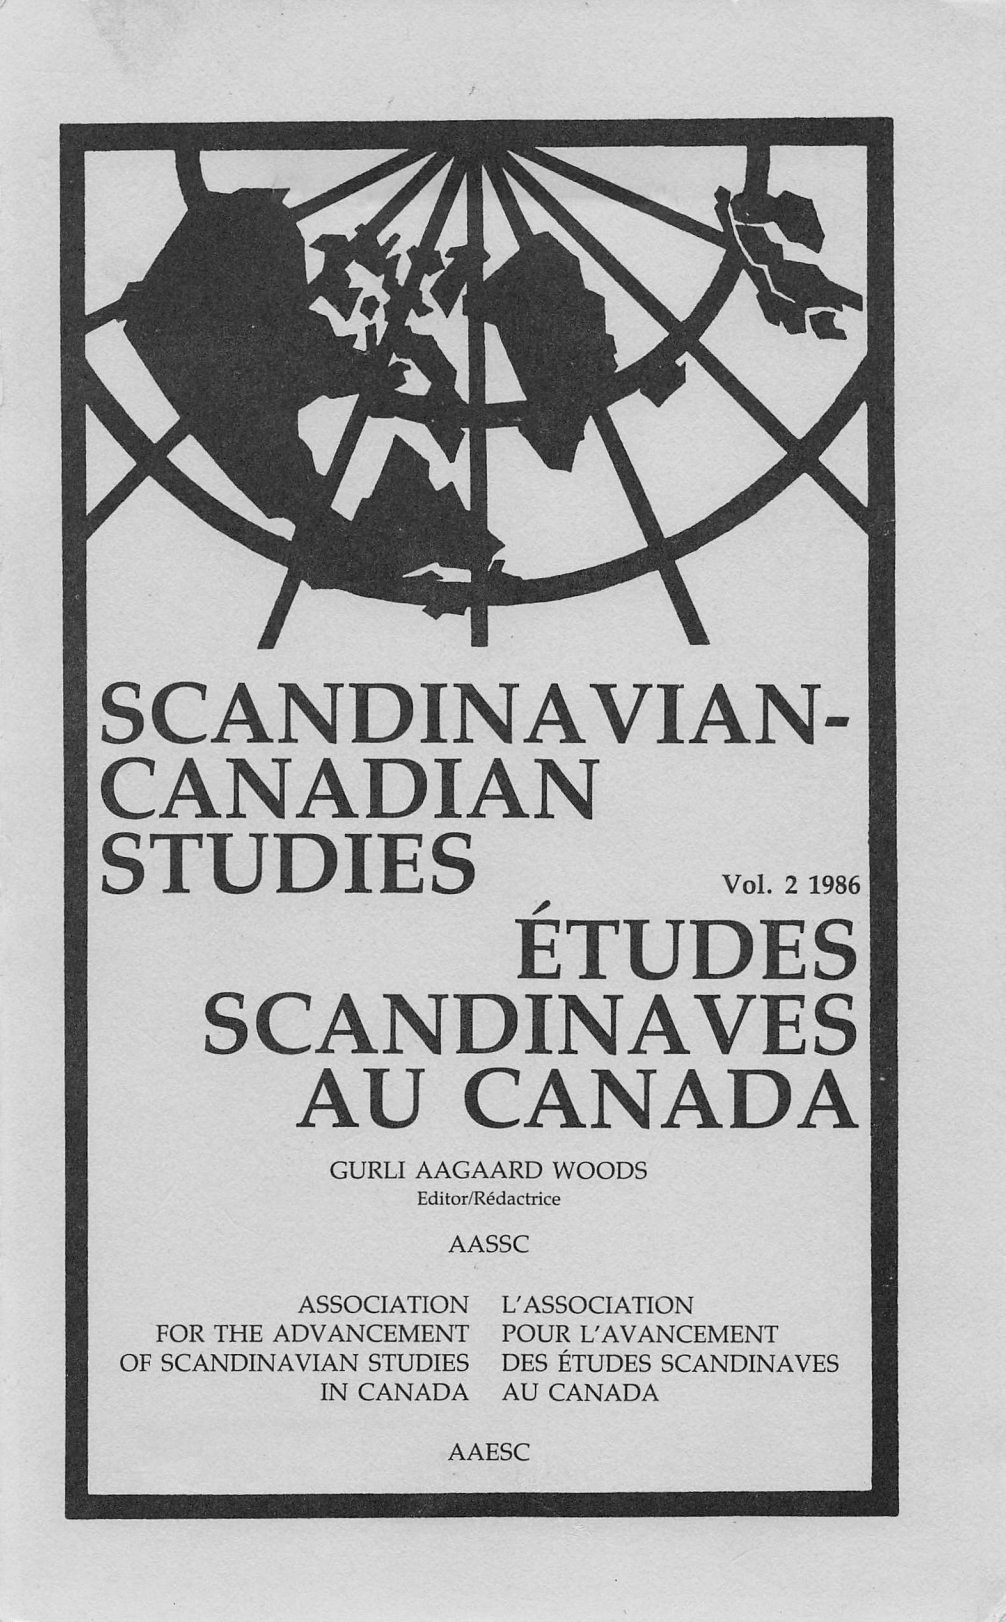 					View Vol. 2 (1986): SCANDINAVIAN-CANADIAN STUDIES/ÉTUDES SCANDINAVES AU CANADA Vol. 2 (1986)
				